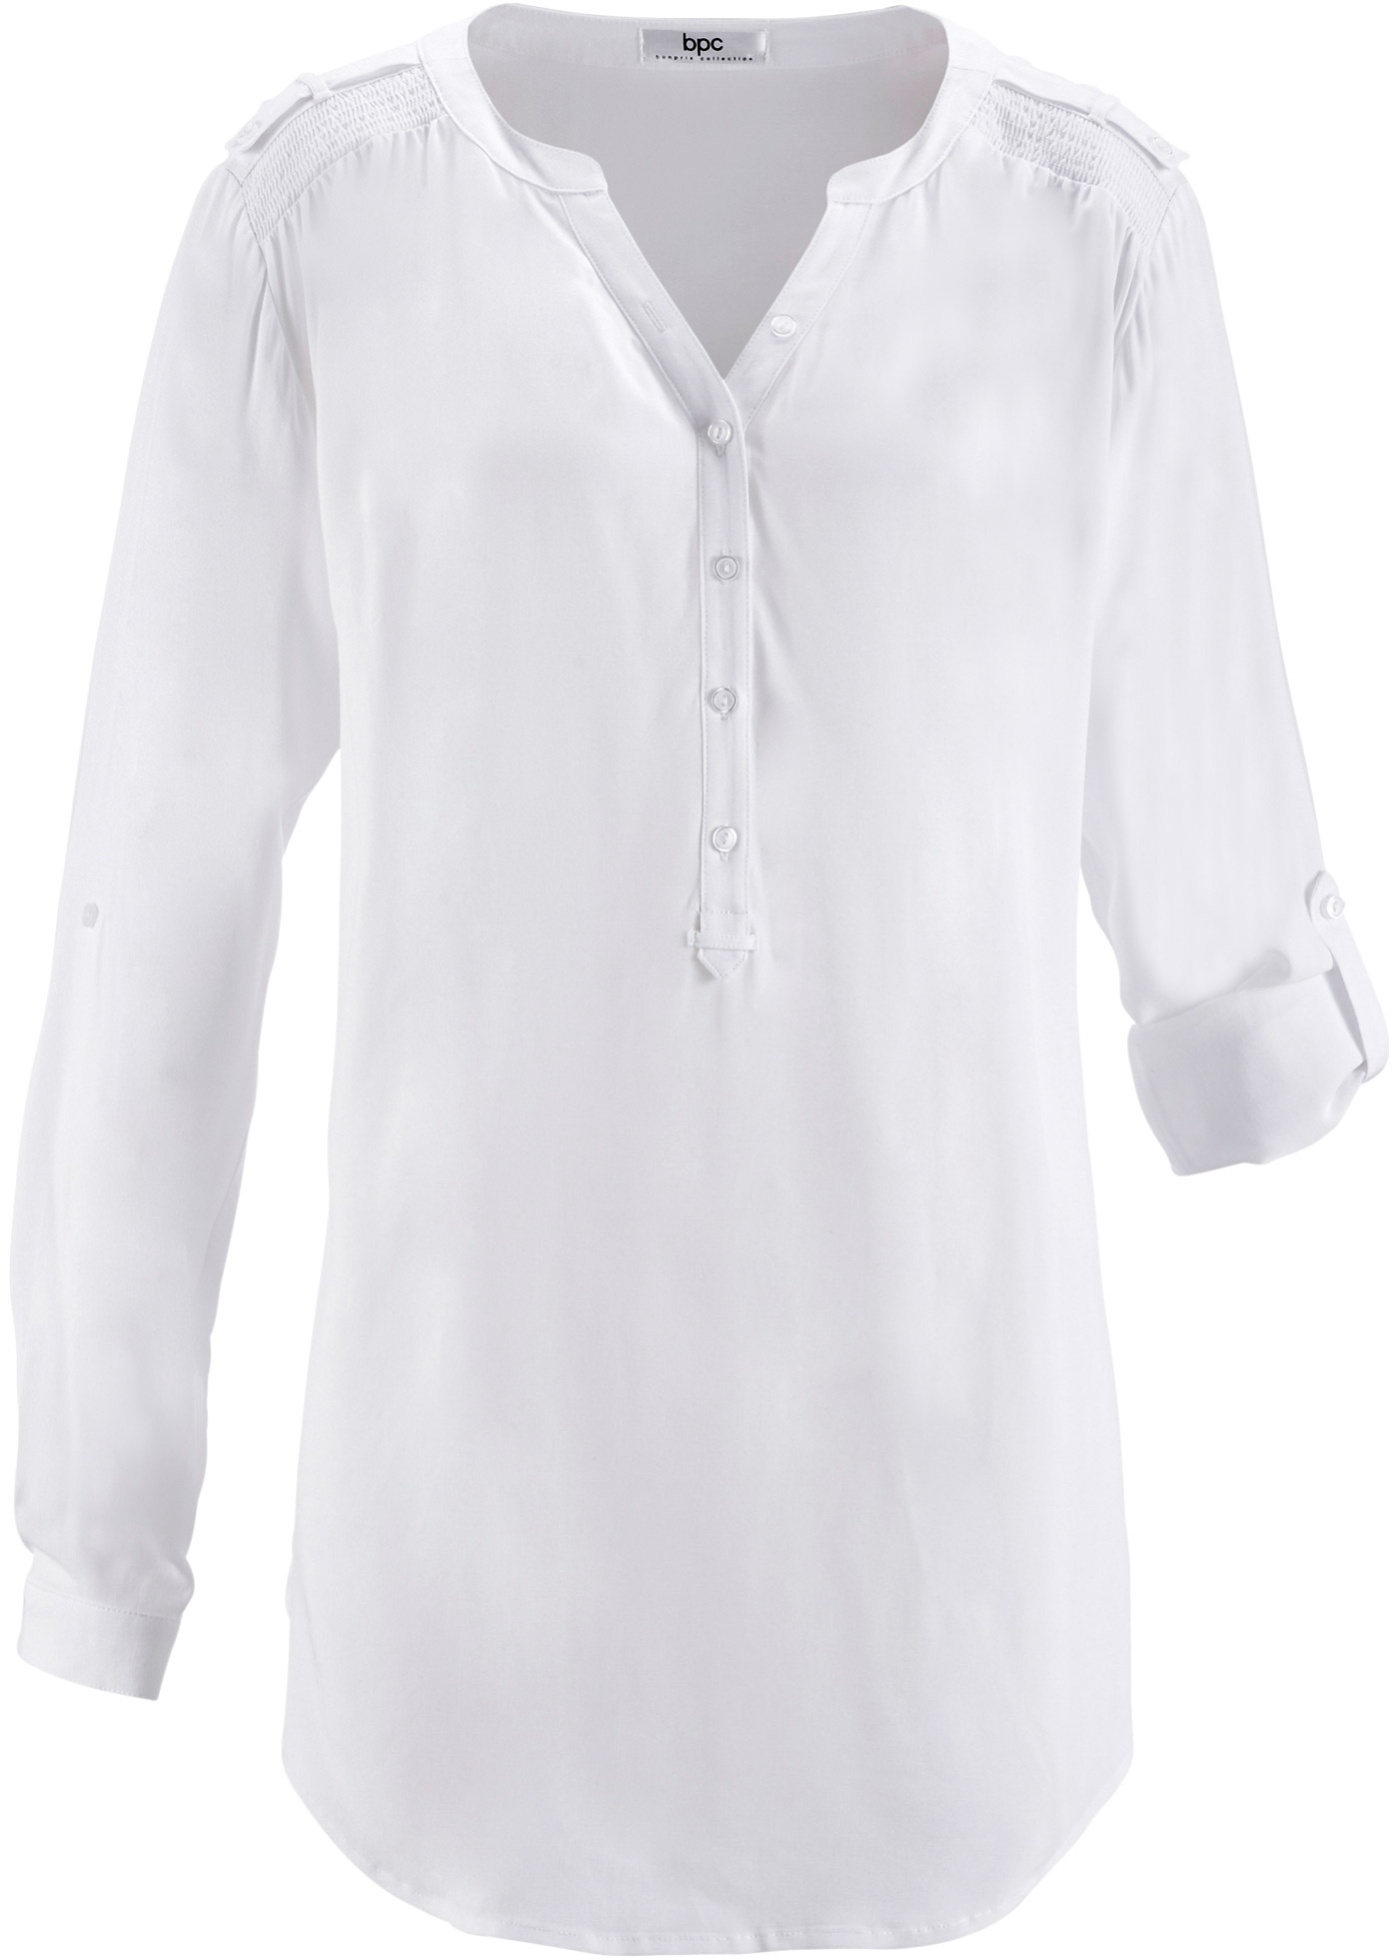 Длинная рубашка из хлопка. Bonprix туника удлинённая. Белая туника bonprix. Блузка. Блузка из муслина.